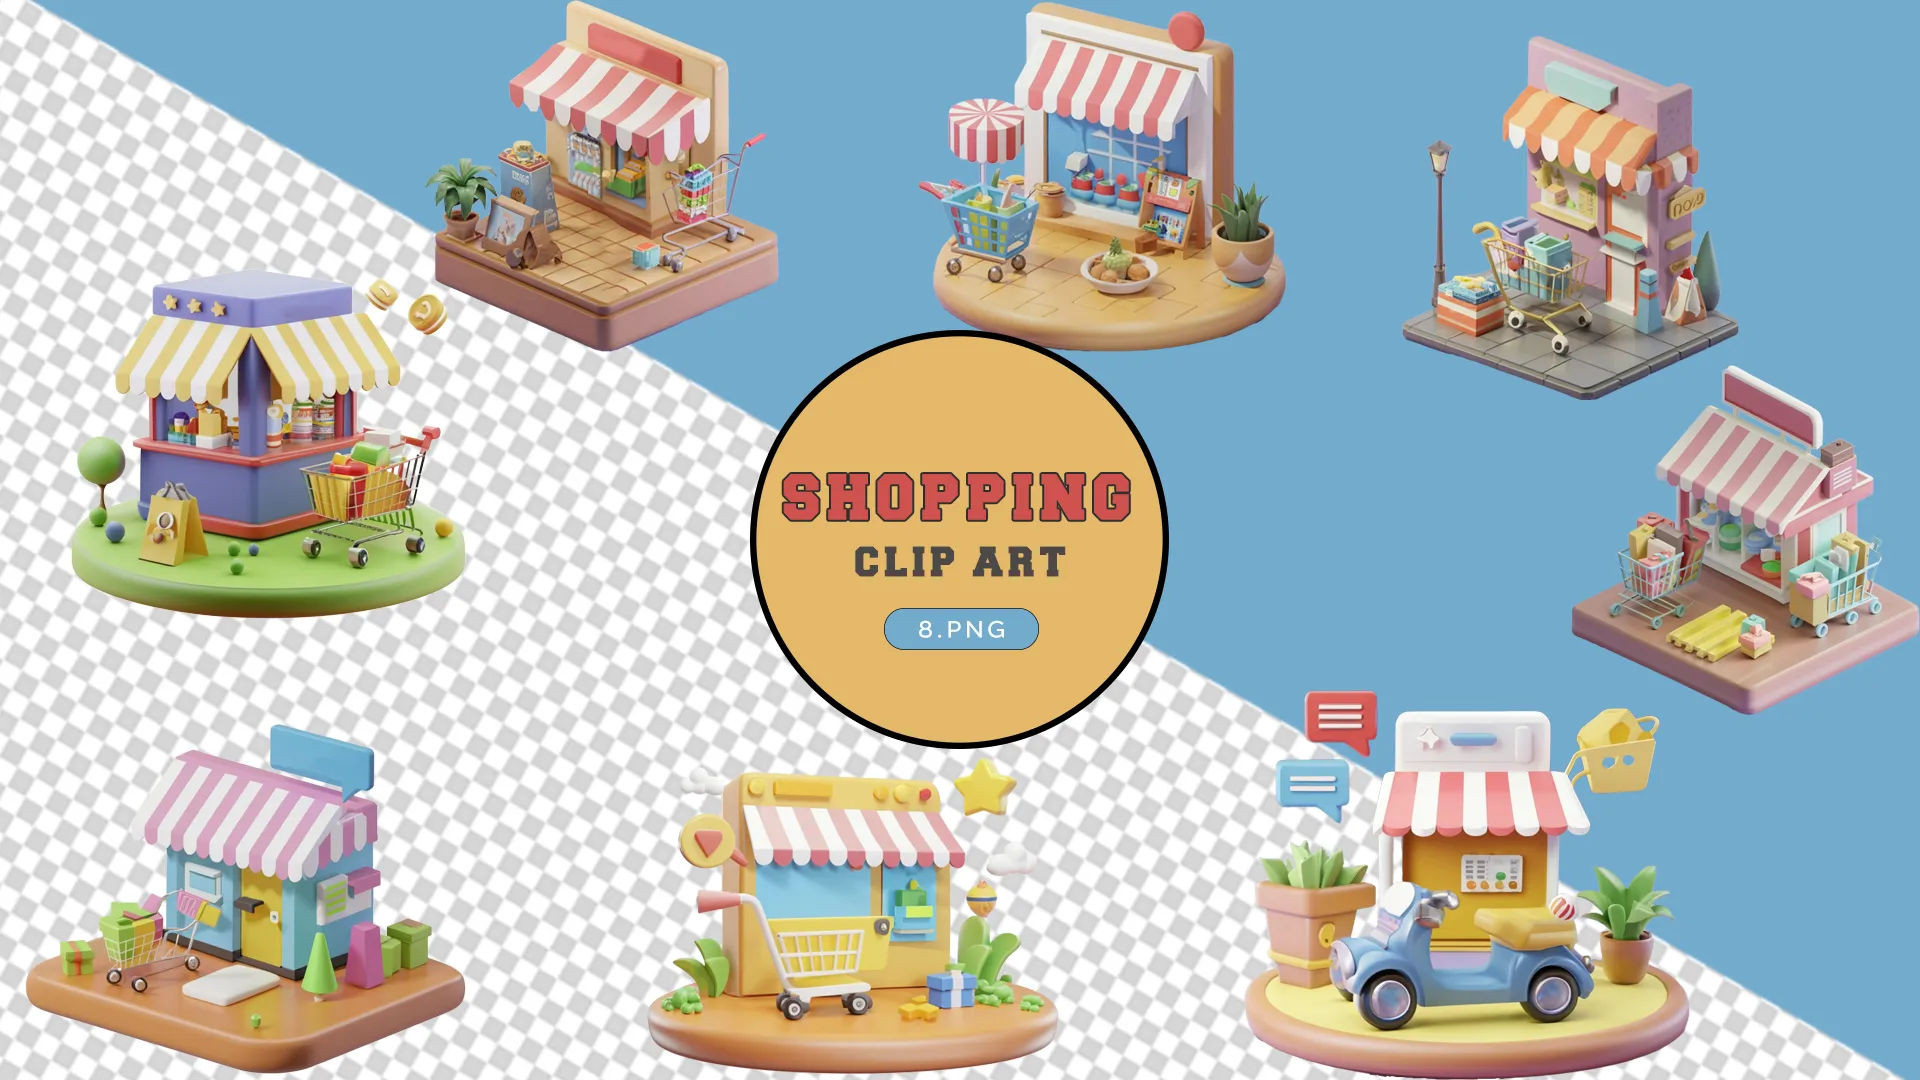 Boutique Shops 3D Pack for Retail Design